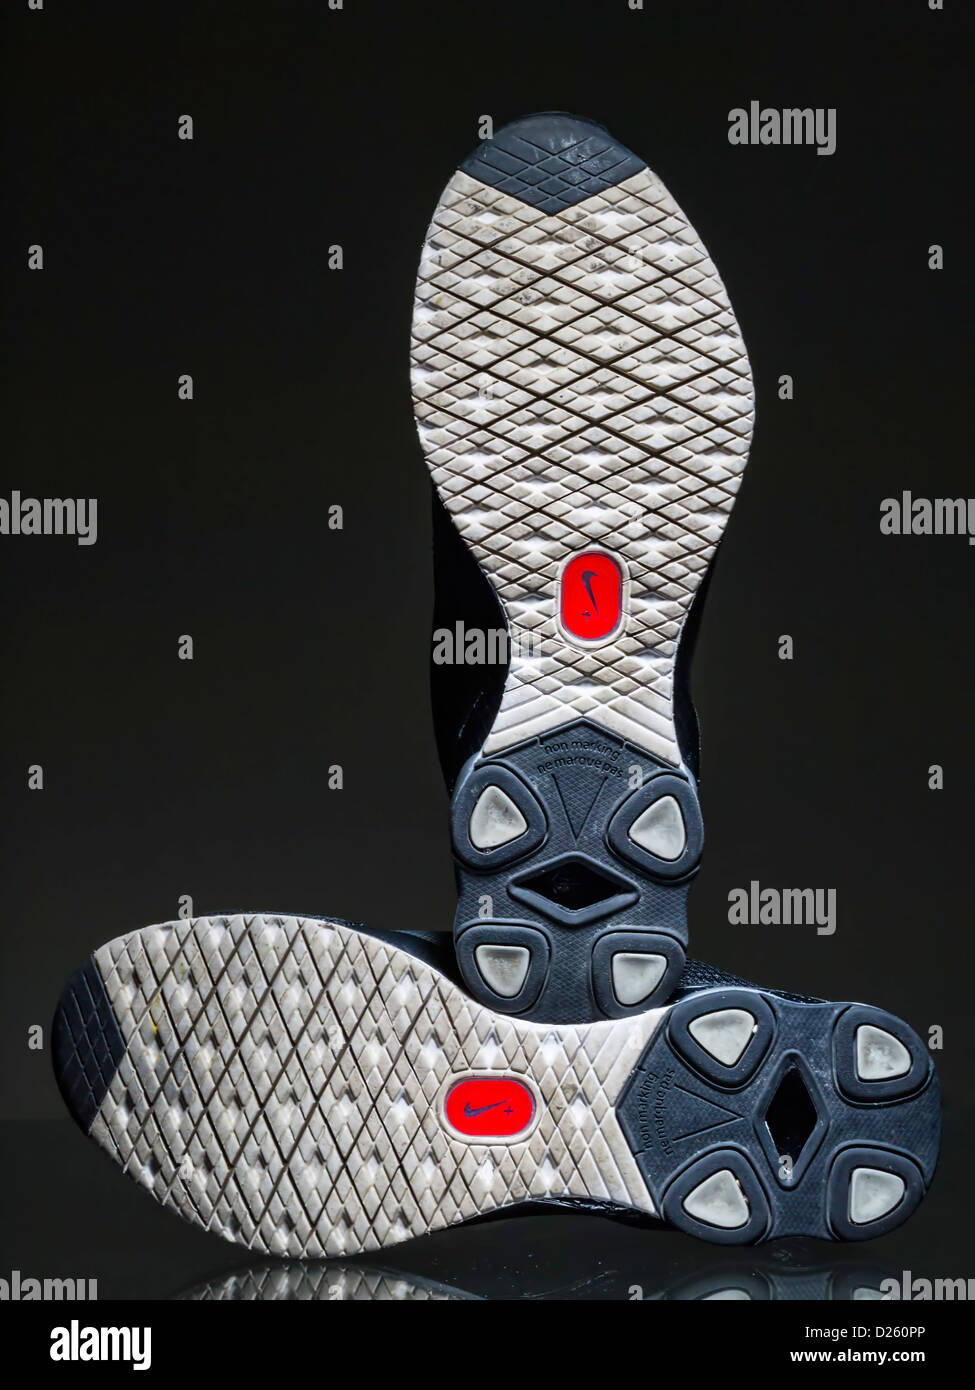 Nike+ logo running shoes' Stock Photo - Alamy